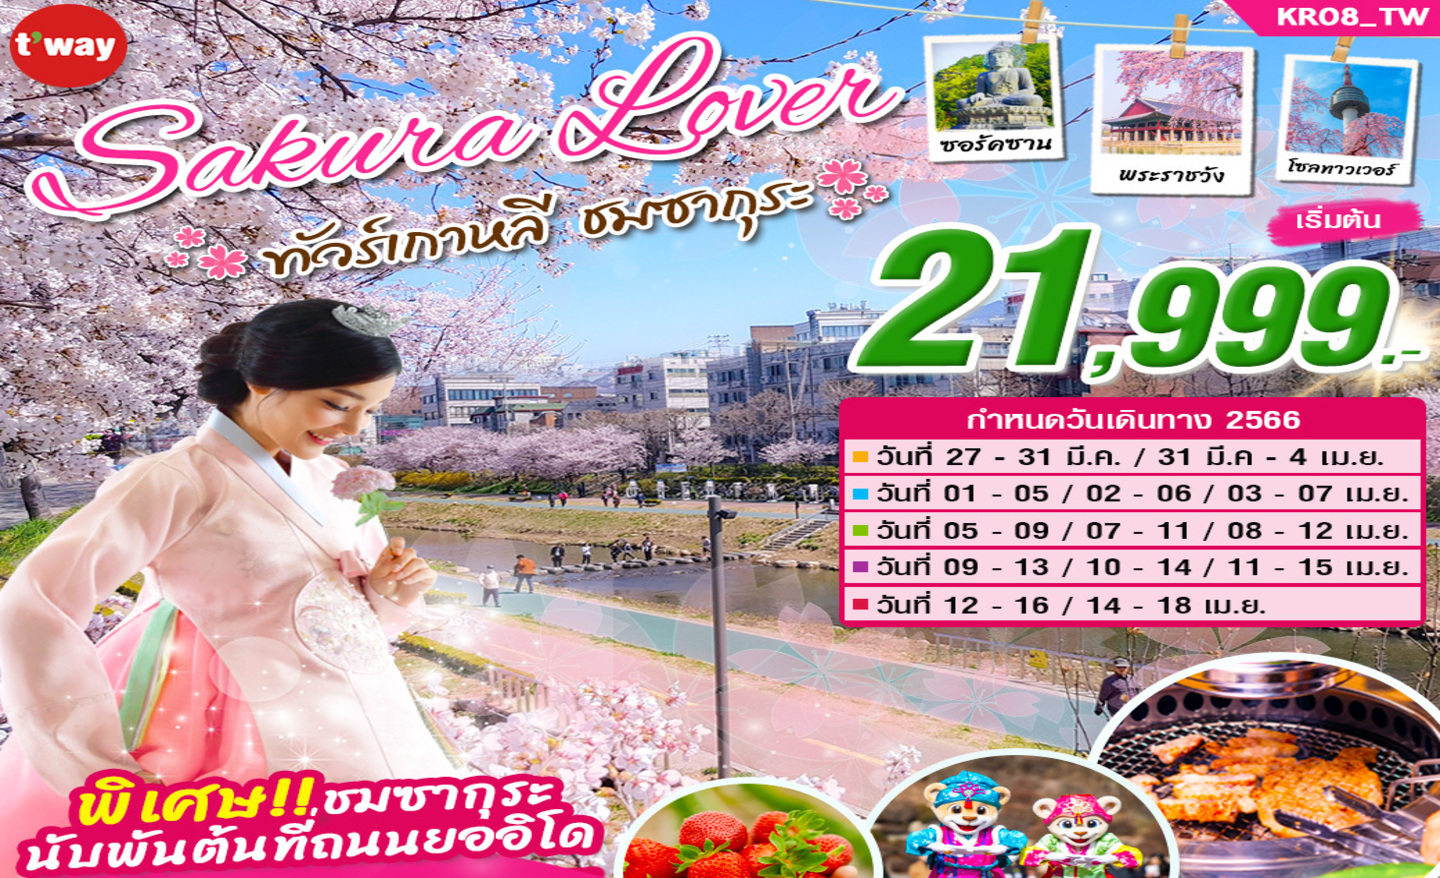 ทัวร์เกาหลี Sakura Lover (มี.ค.-เม.ย 66)